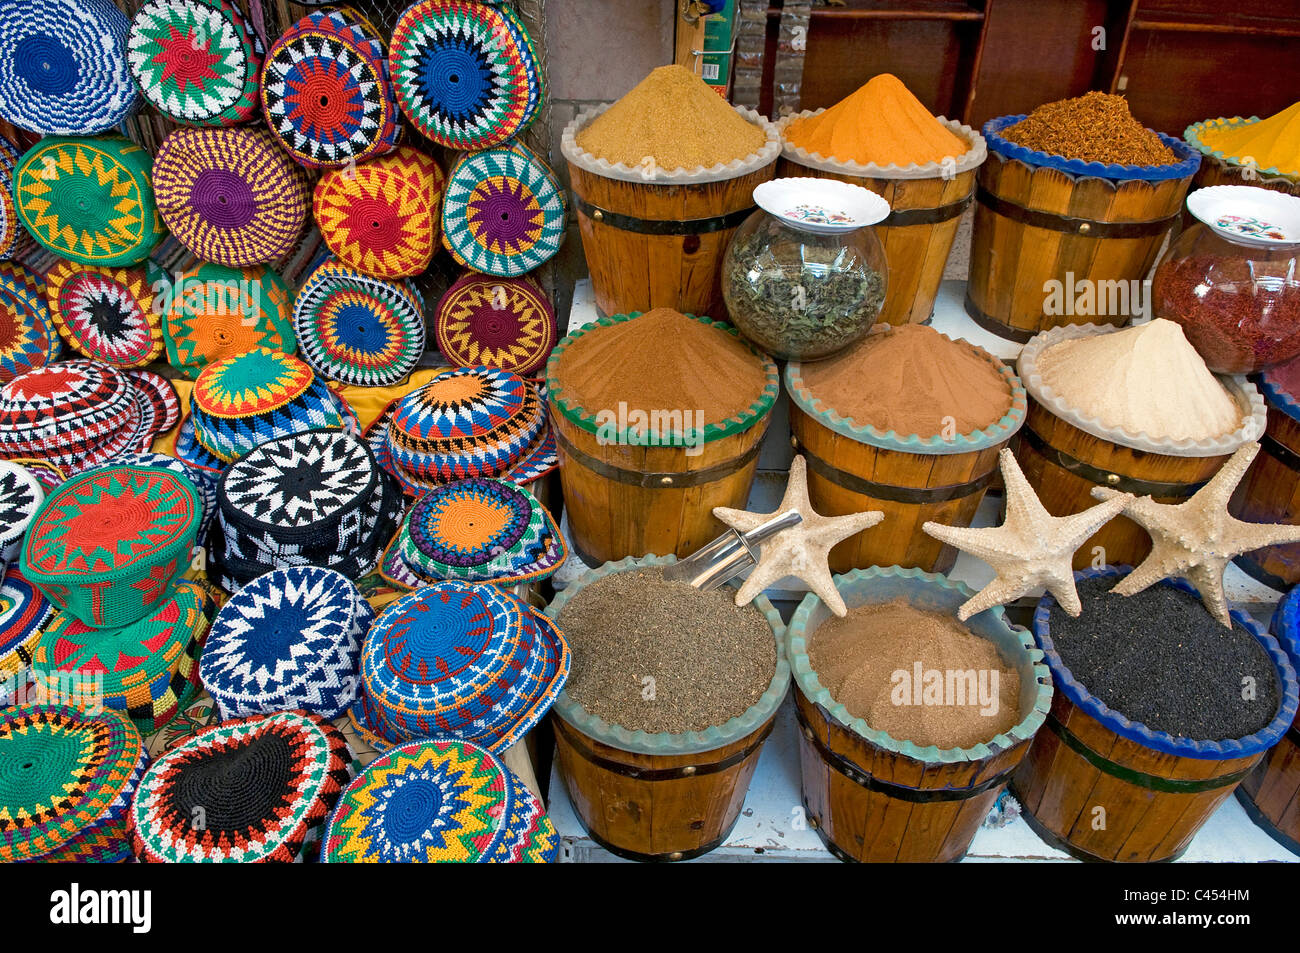 Ägypten, Aswan, Souk, verschiedene Kappen und Gewürze am Marktstand, Nahaufnahme Stockfoto